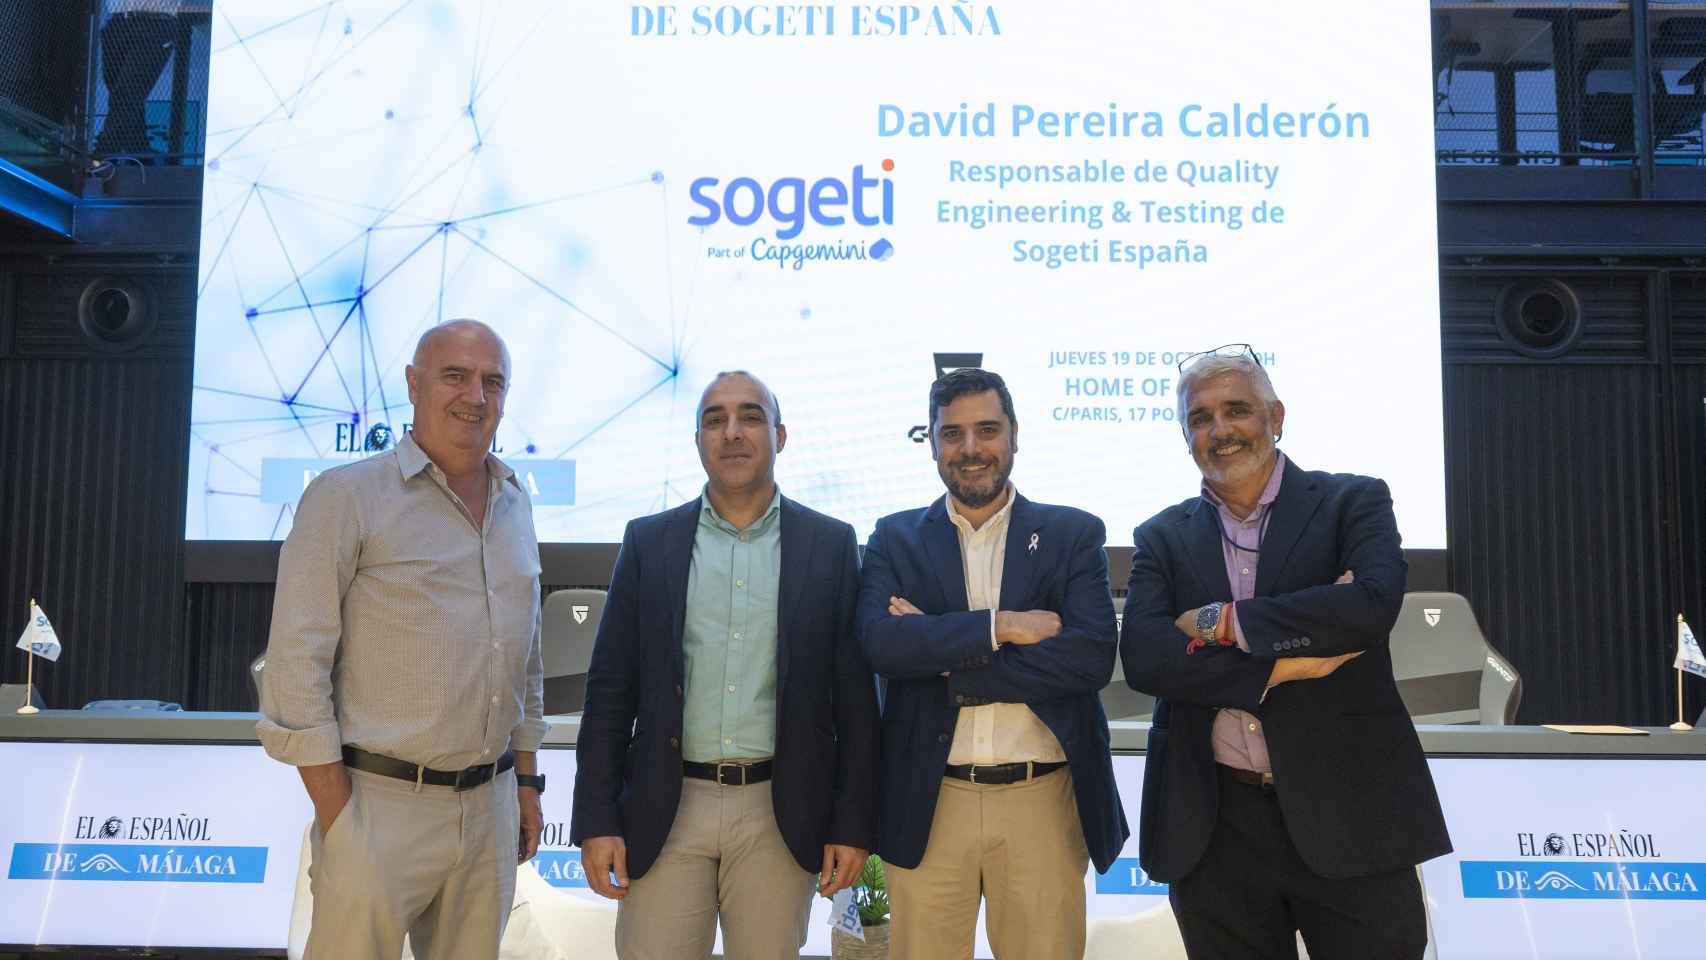 Las mejores imágenes del Encuentro Empresarial de El Español de Málaga y Sogeti